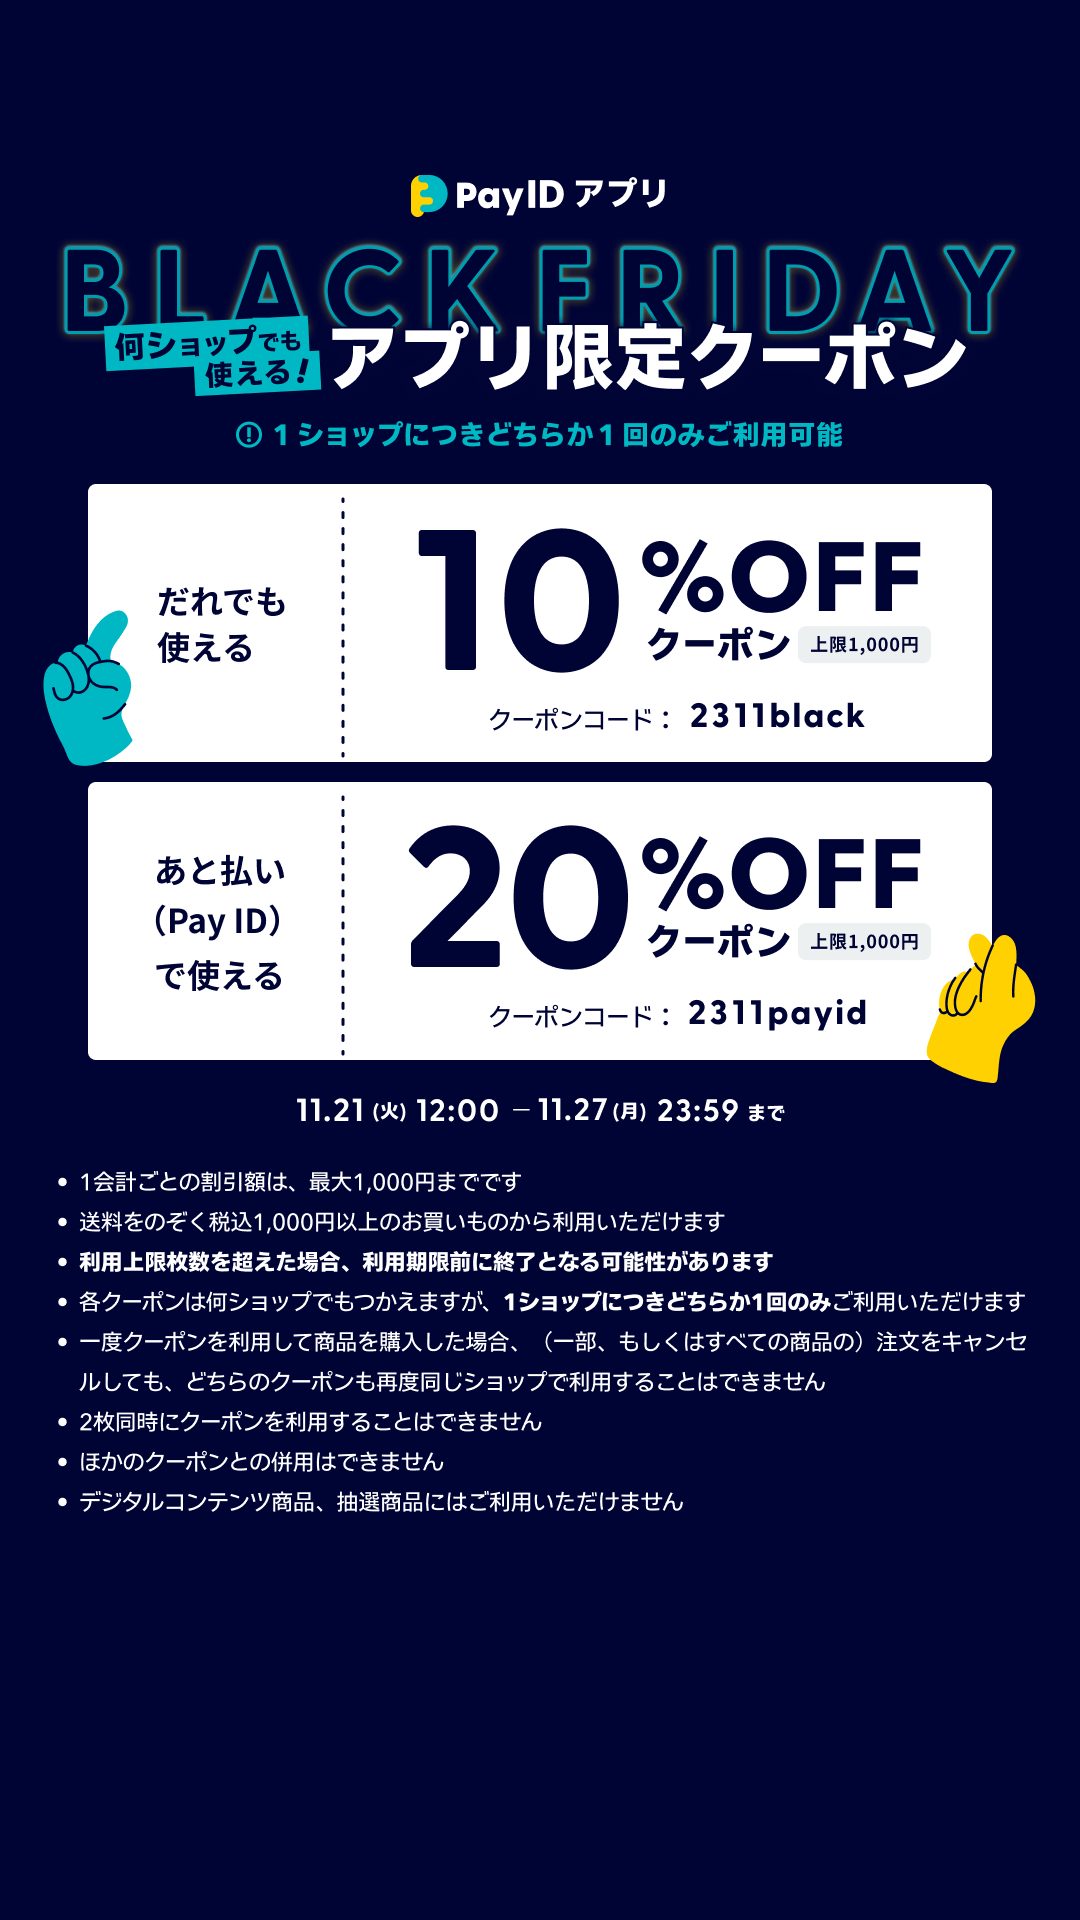 🎵11/21～27「『Pay IDアプリ』限定ブラックフライデークーポンキャンペーン」のお知らせ